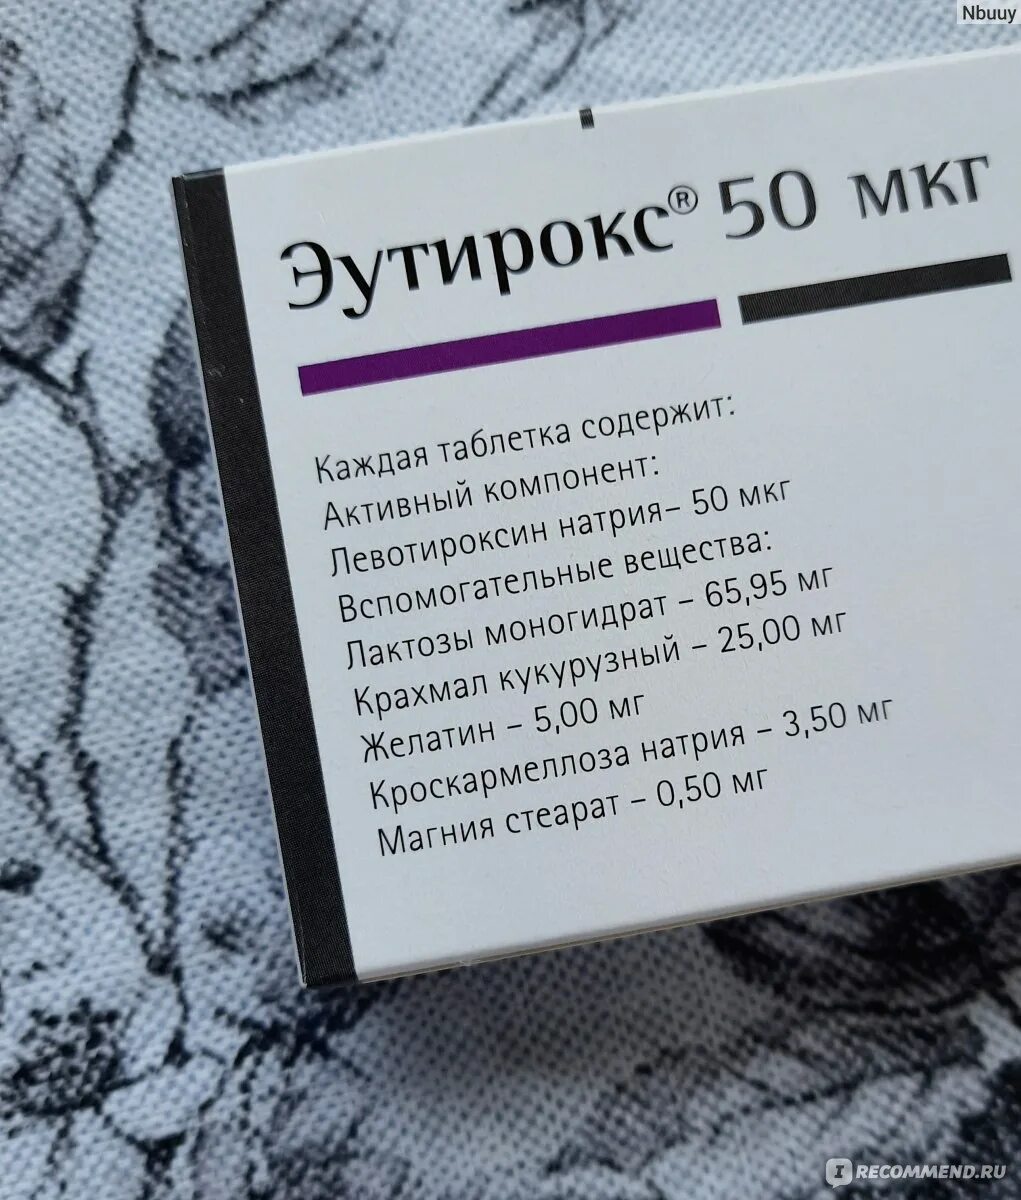 Эутирокс дозировки какие бывают. Эутирокс 25 мкг. Таблетки для щитовидной железы эутирокс 50 мг. Эутирокс таблетки 25мкг. Эутирокс 100 мг.